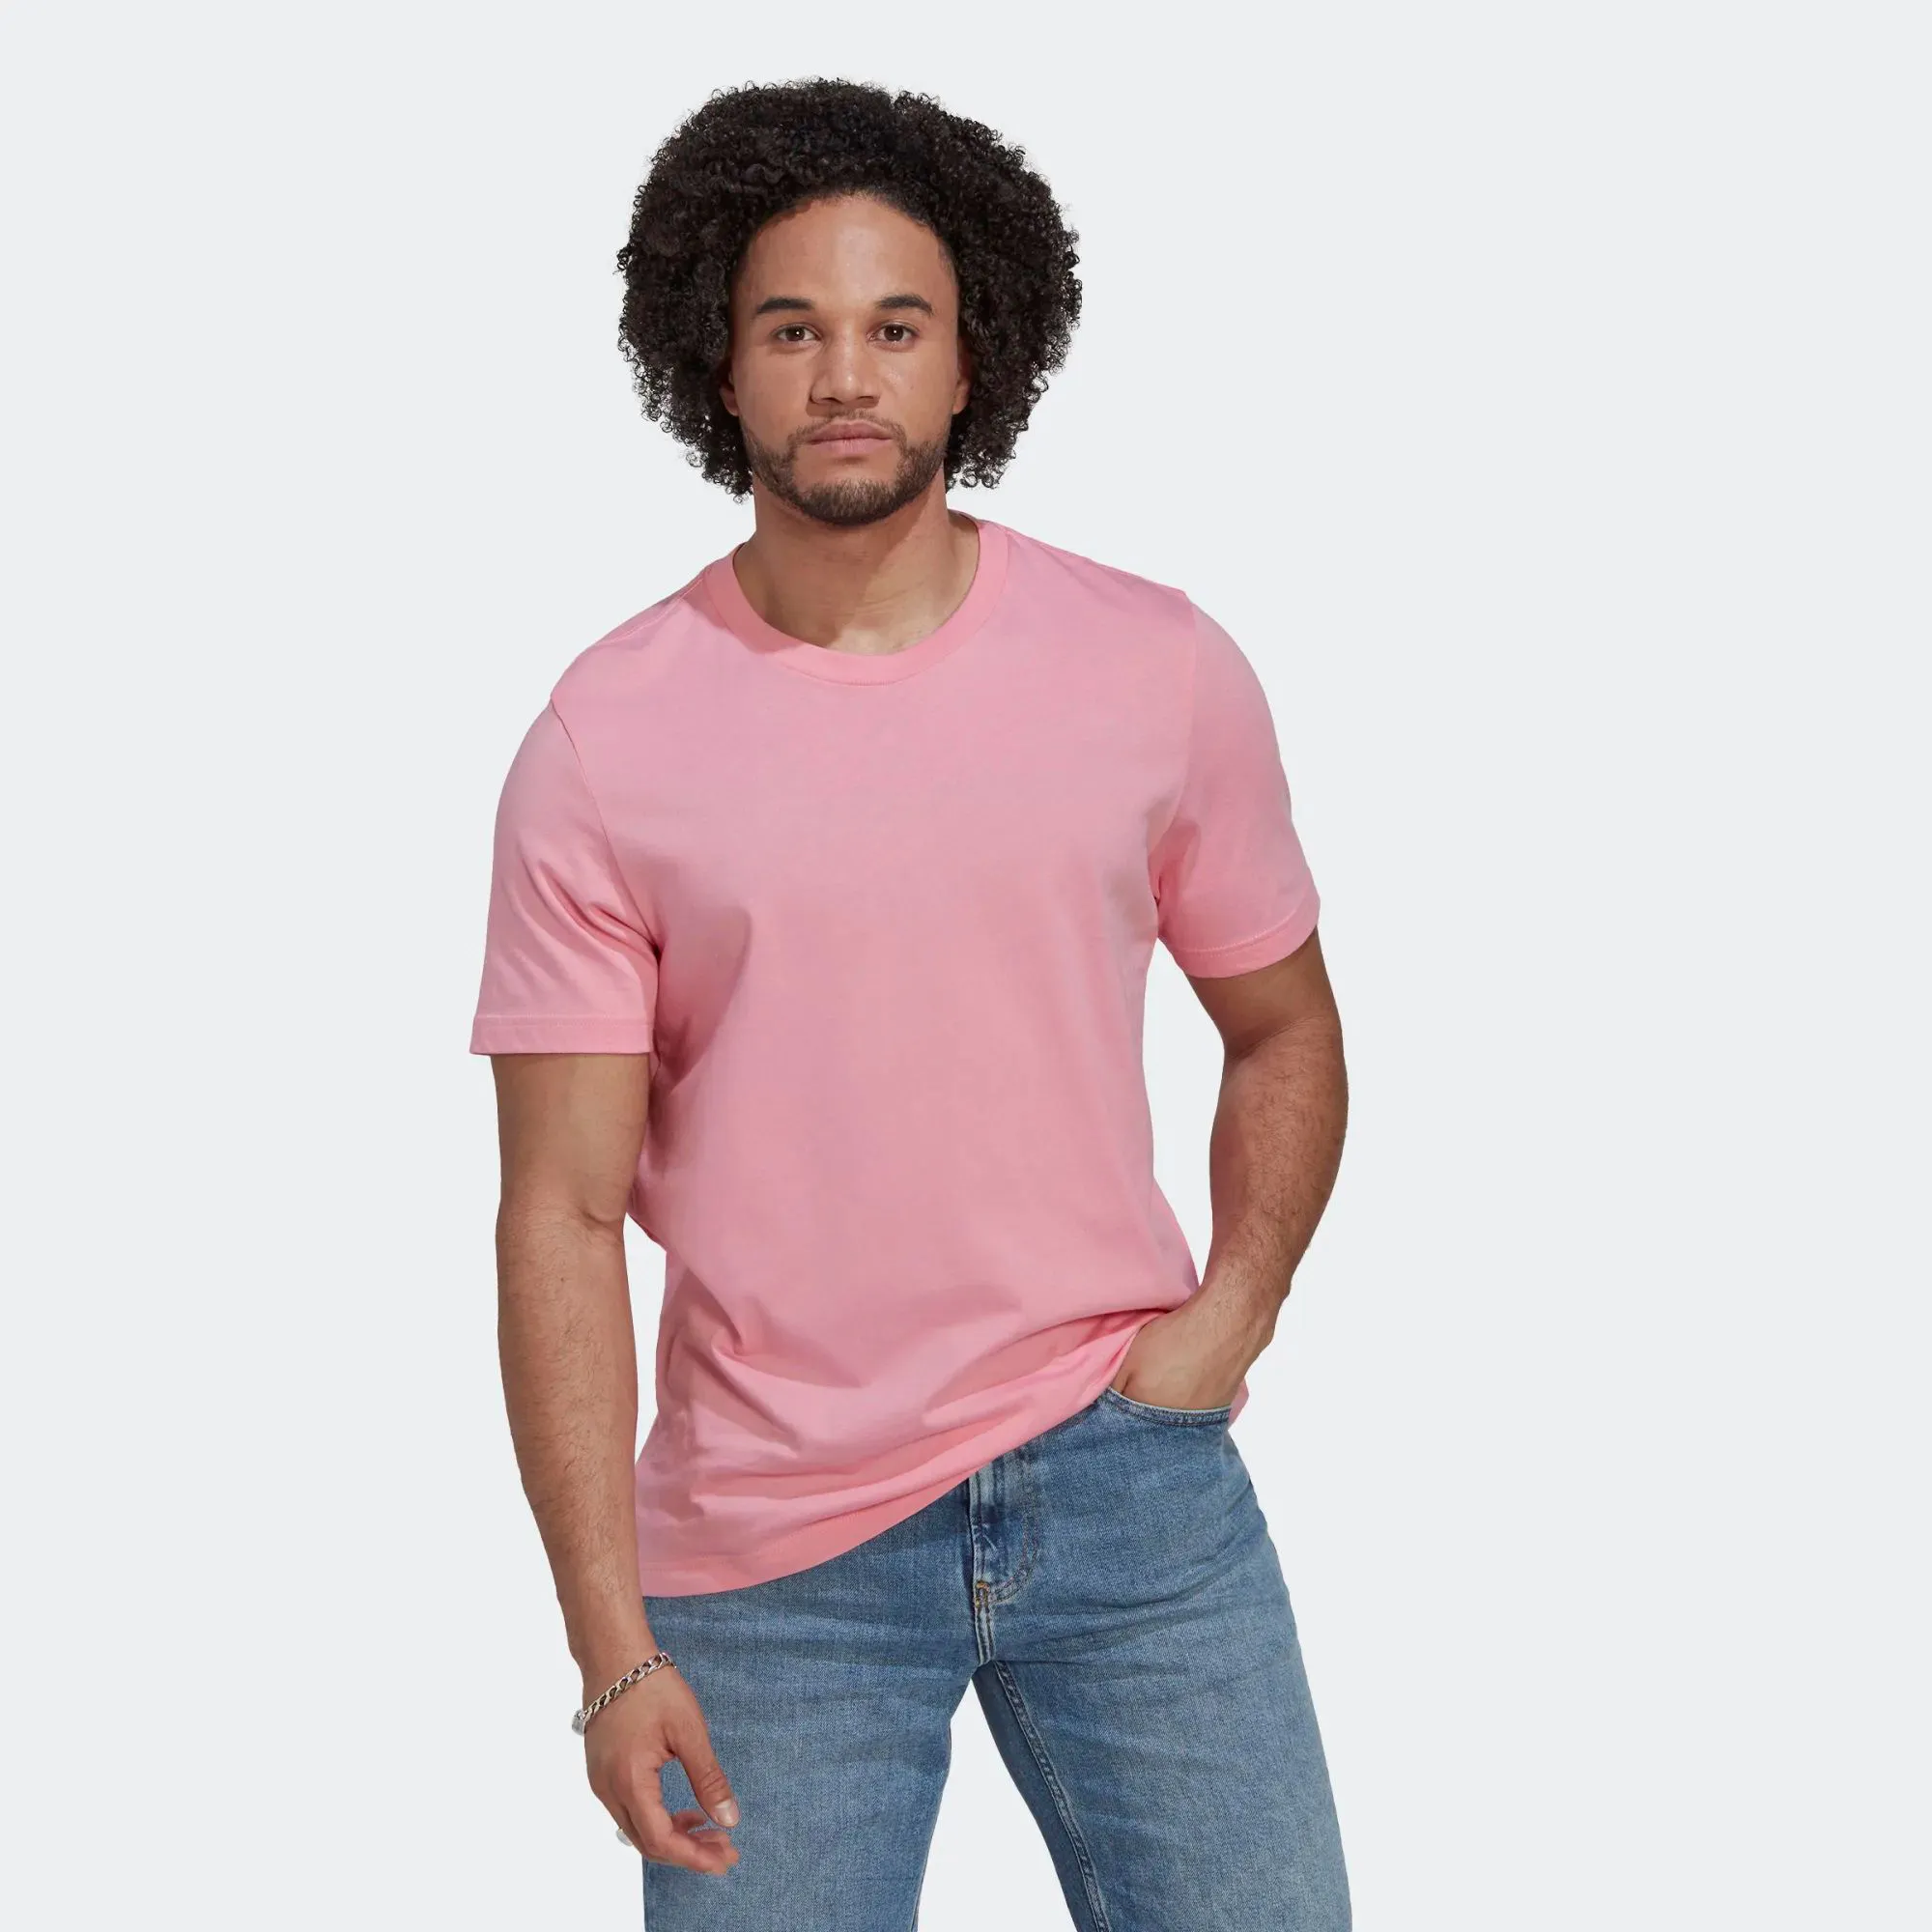 Regular Fit gerippter Rundhals ausschnitt 100% Baumwolle Single Jersey Kurzarm Bliss Pink Men Essentials T-Shirts